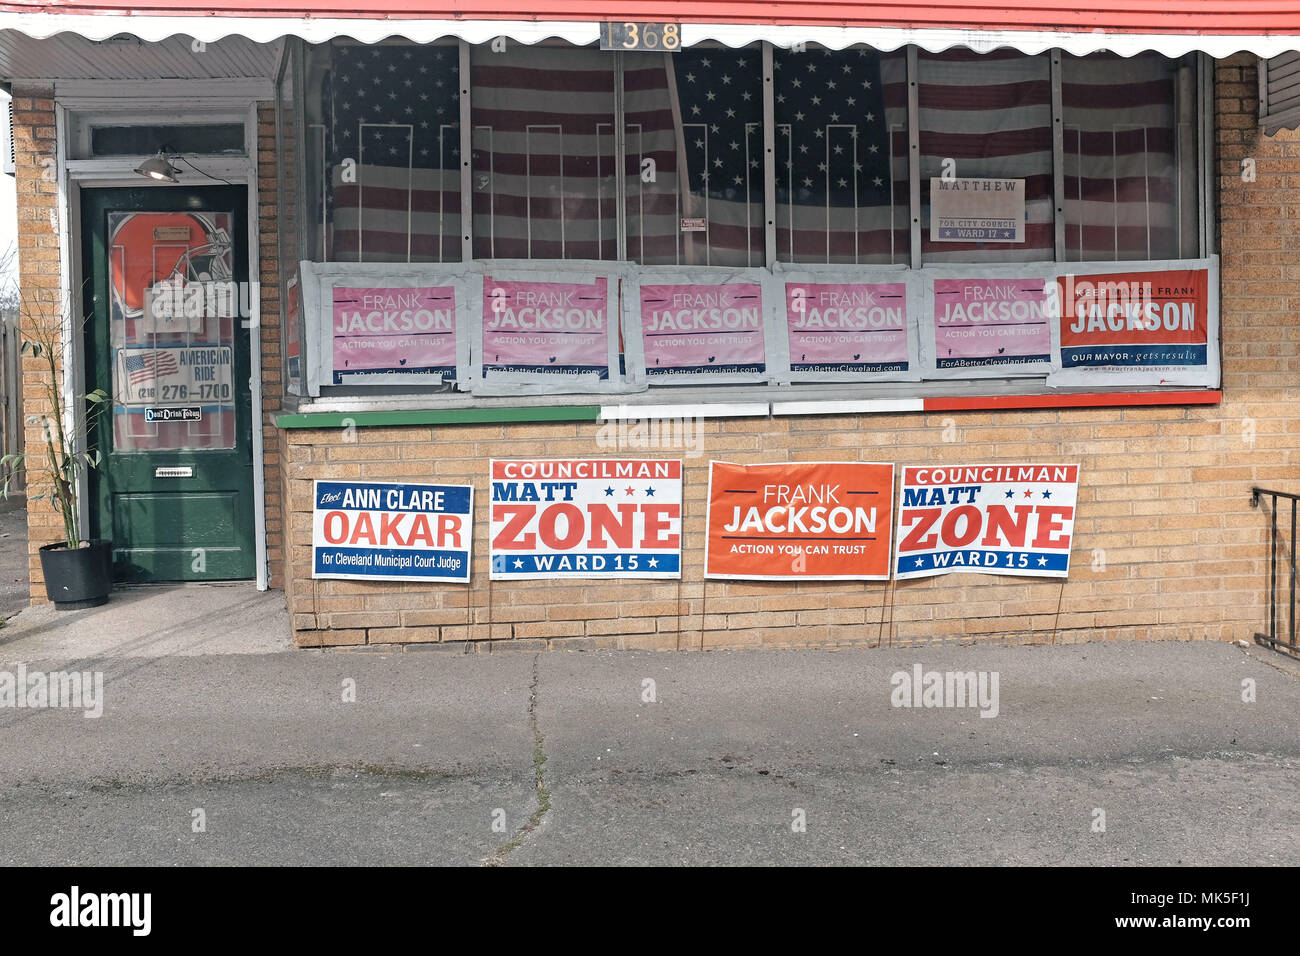 Maison/business affiche affiches électorales politiques à Cleveland, Ohio pour le mai 2018 primaires. Banque D'Images